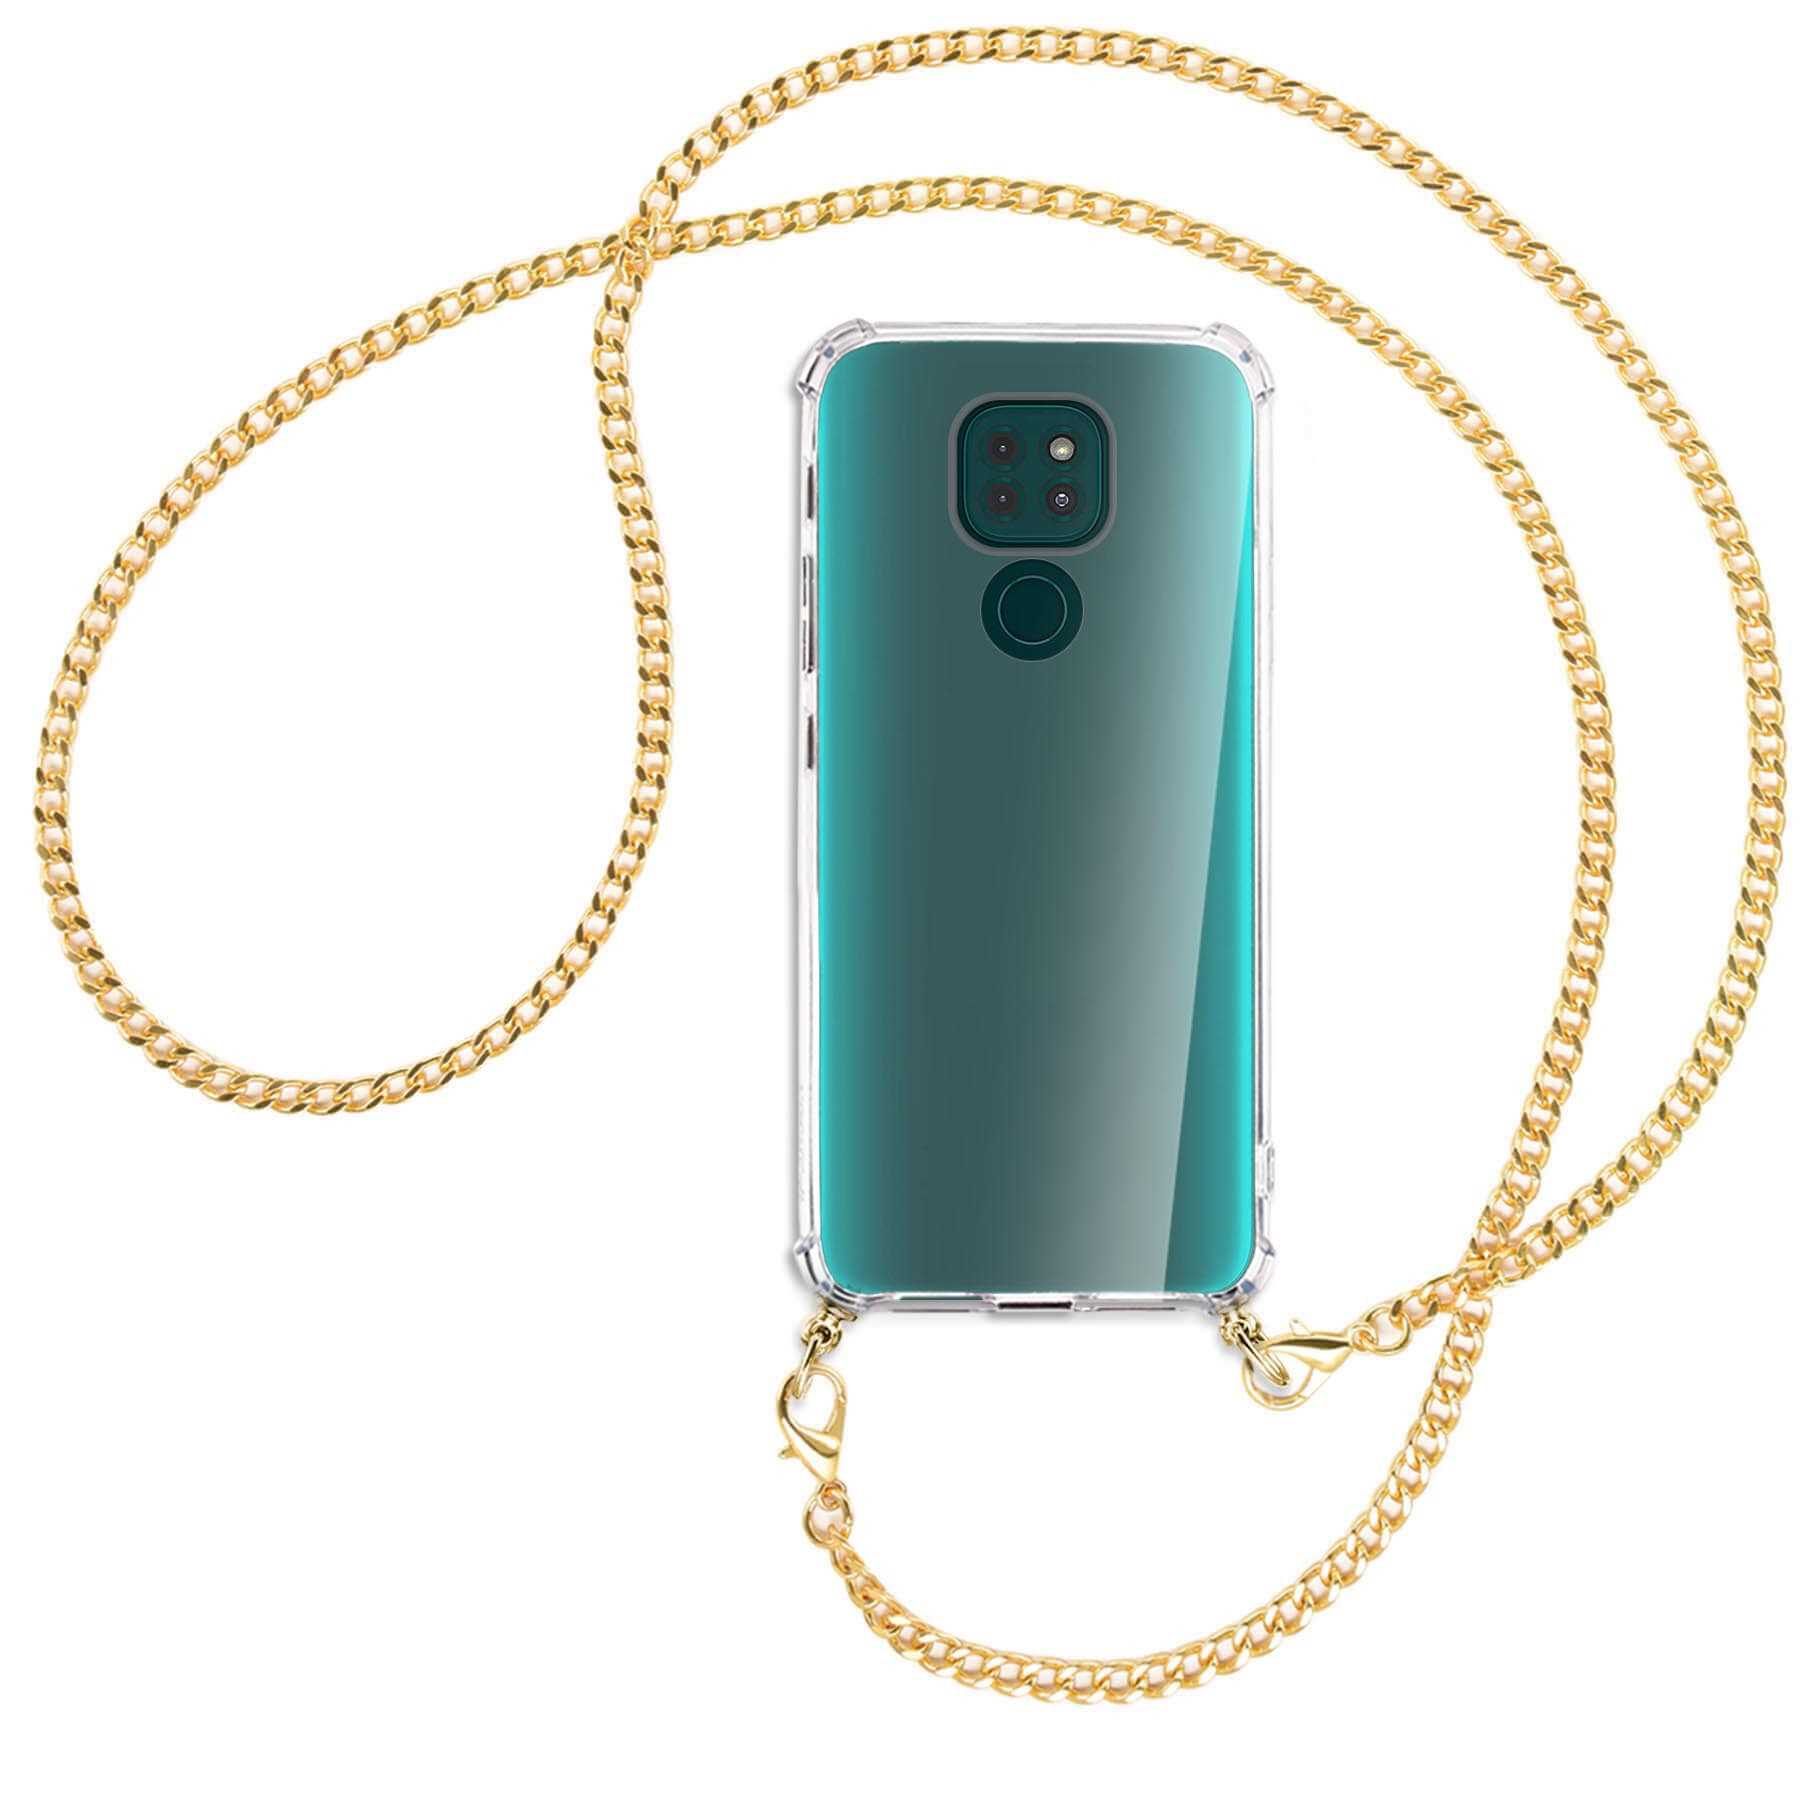 MORE (goldfarben) Motorola, G9 Play, Backcover, MTB Umhänge-Hülle Moto Metallkette, mit ENERGY Kette